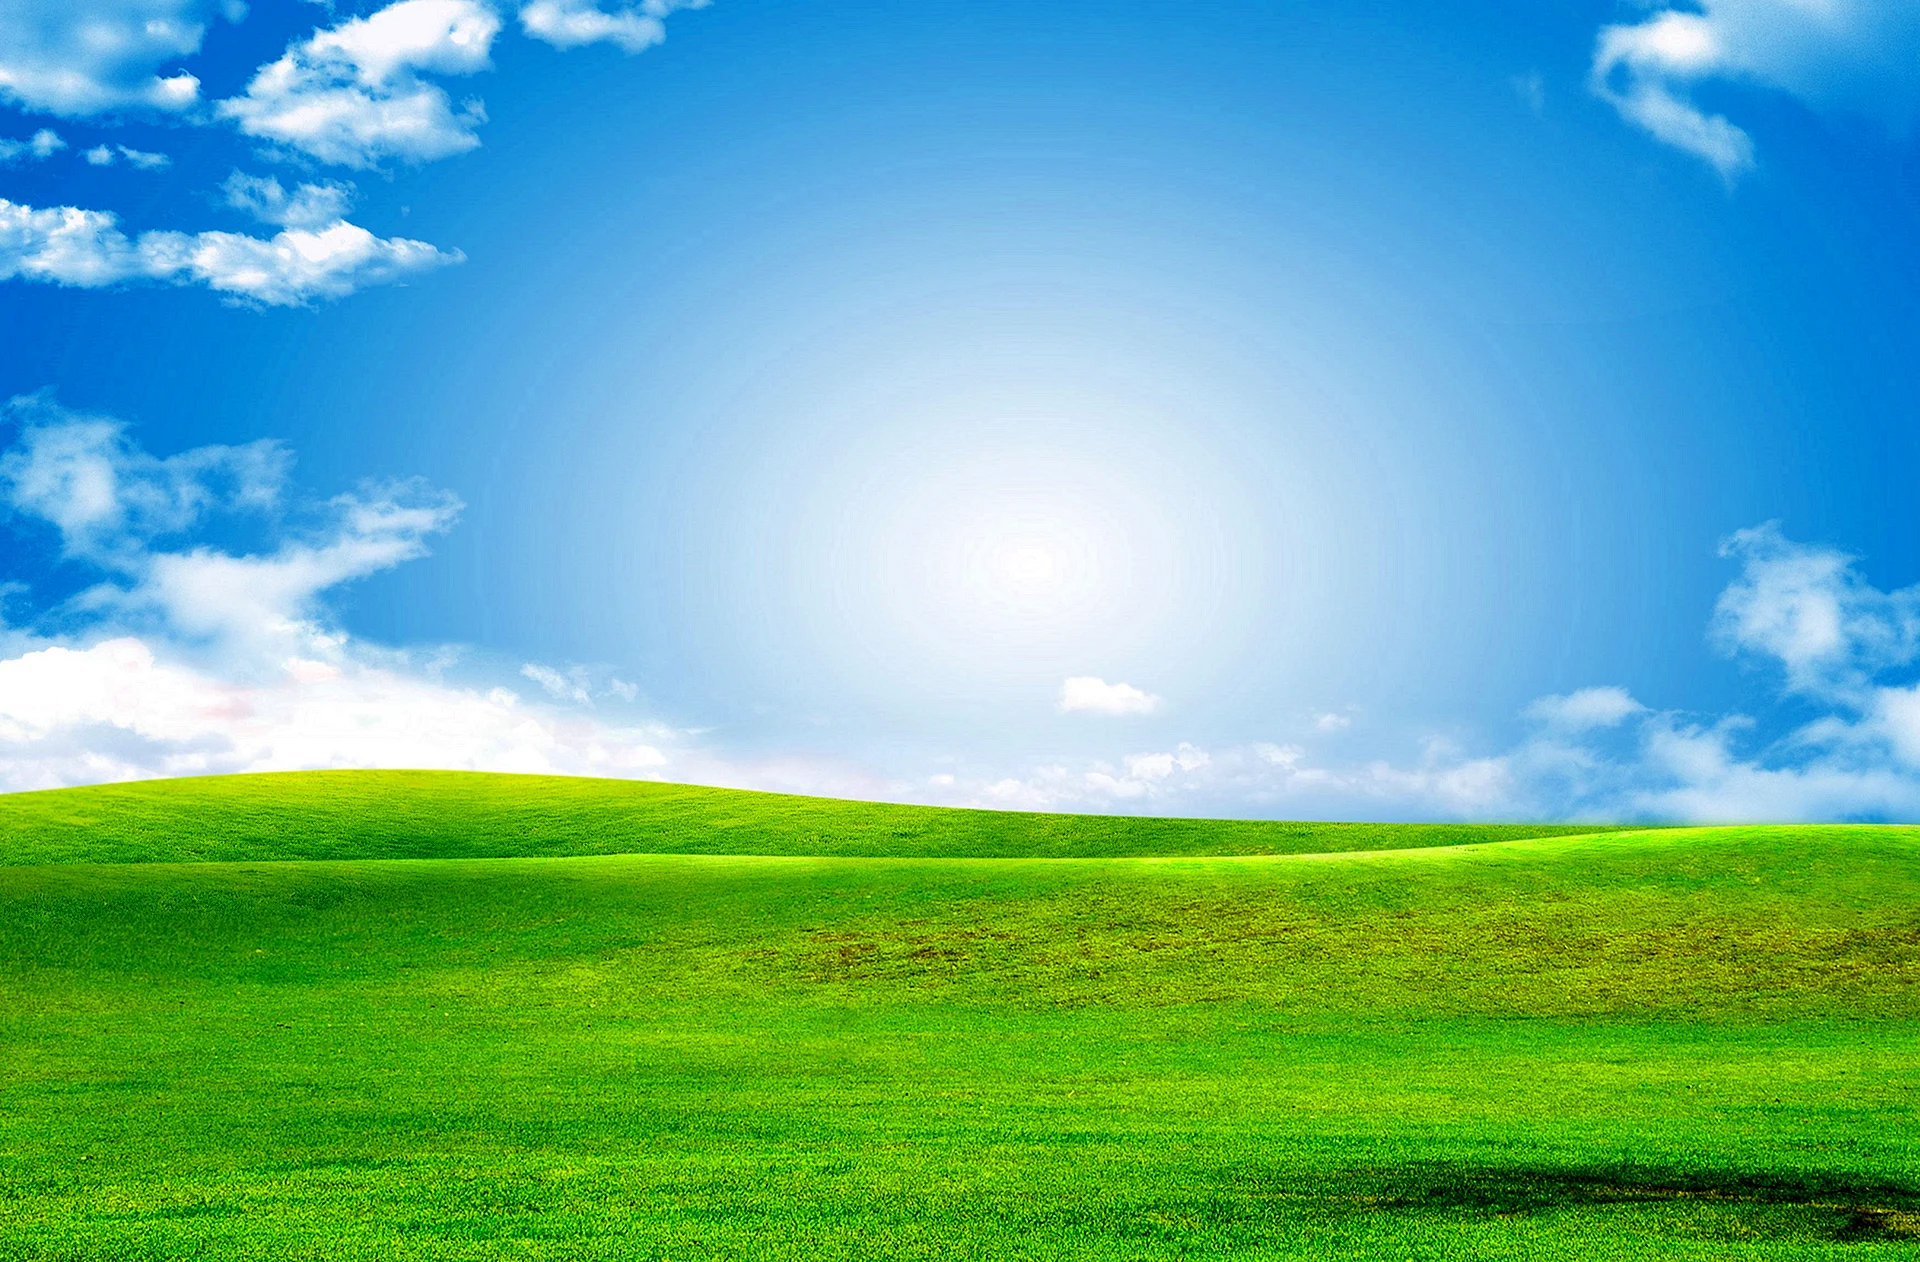 Blue Sky And Green Grass Wallpaper